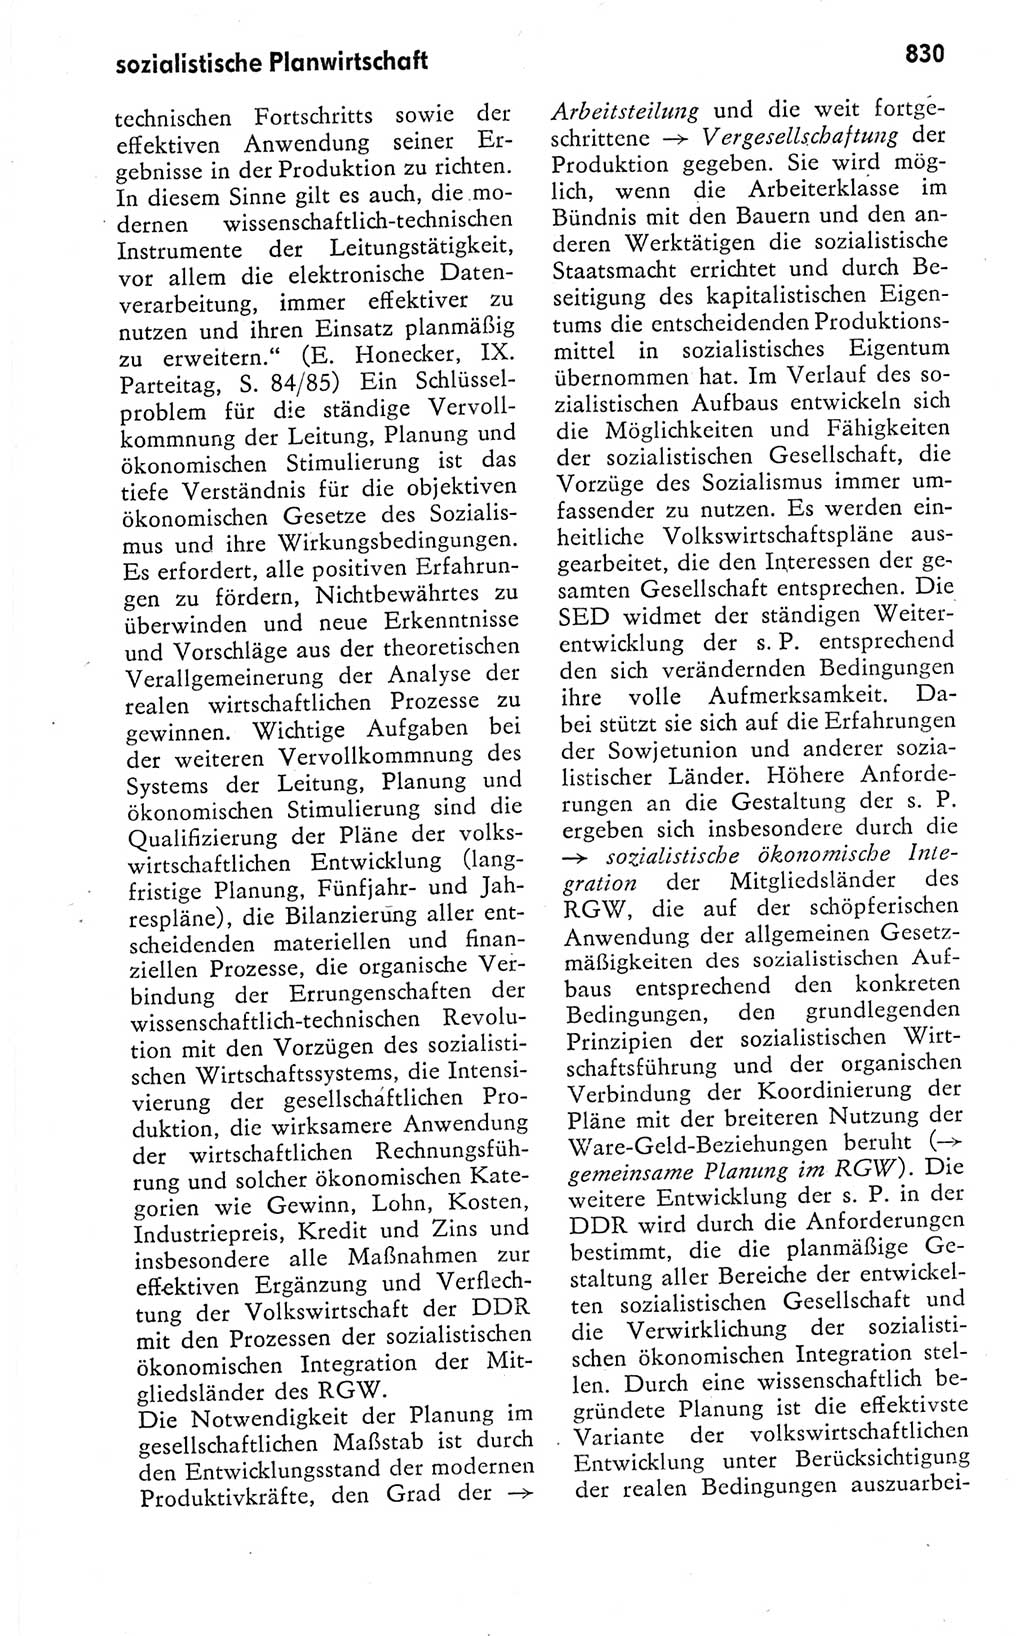 Kleines politisches Wörterbuch [Deutsche Demokratische Republik (DDR)] 1978, Seite 830 (Kl. pol. Wb. DDR 1978, S. 830)